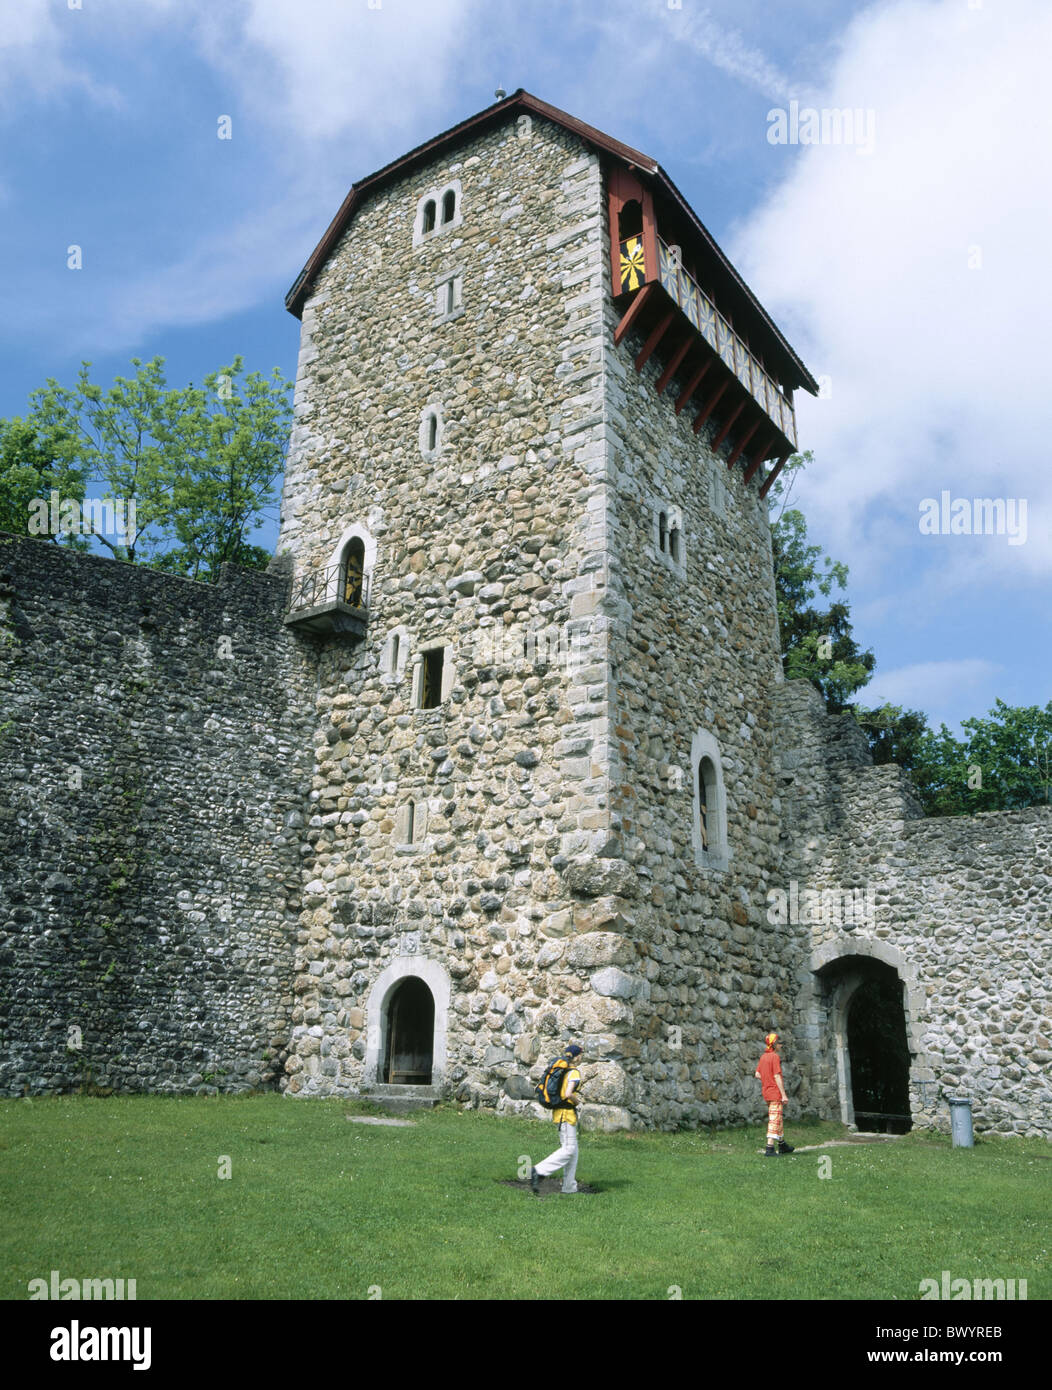 historische Burg Kanton St. Gallen im Mittelalter Burg Iberg Schweiz Europa Toggenburg Turm Rook Wat Stockfoto